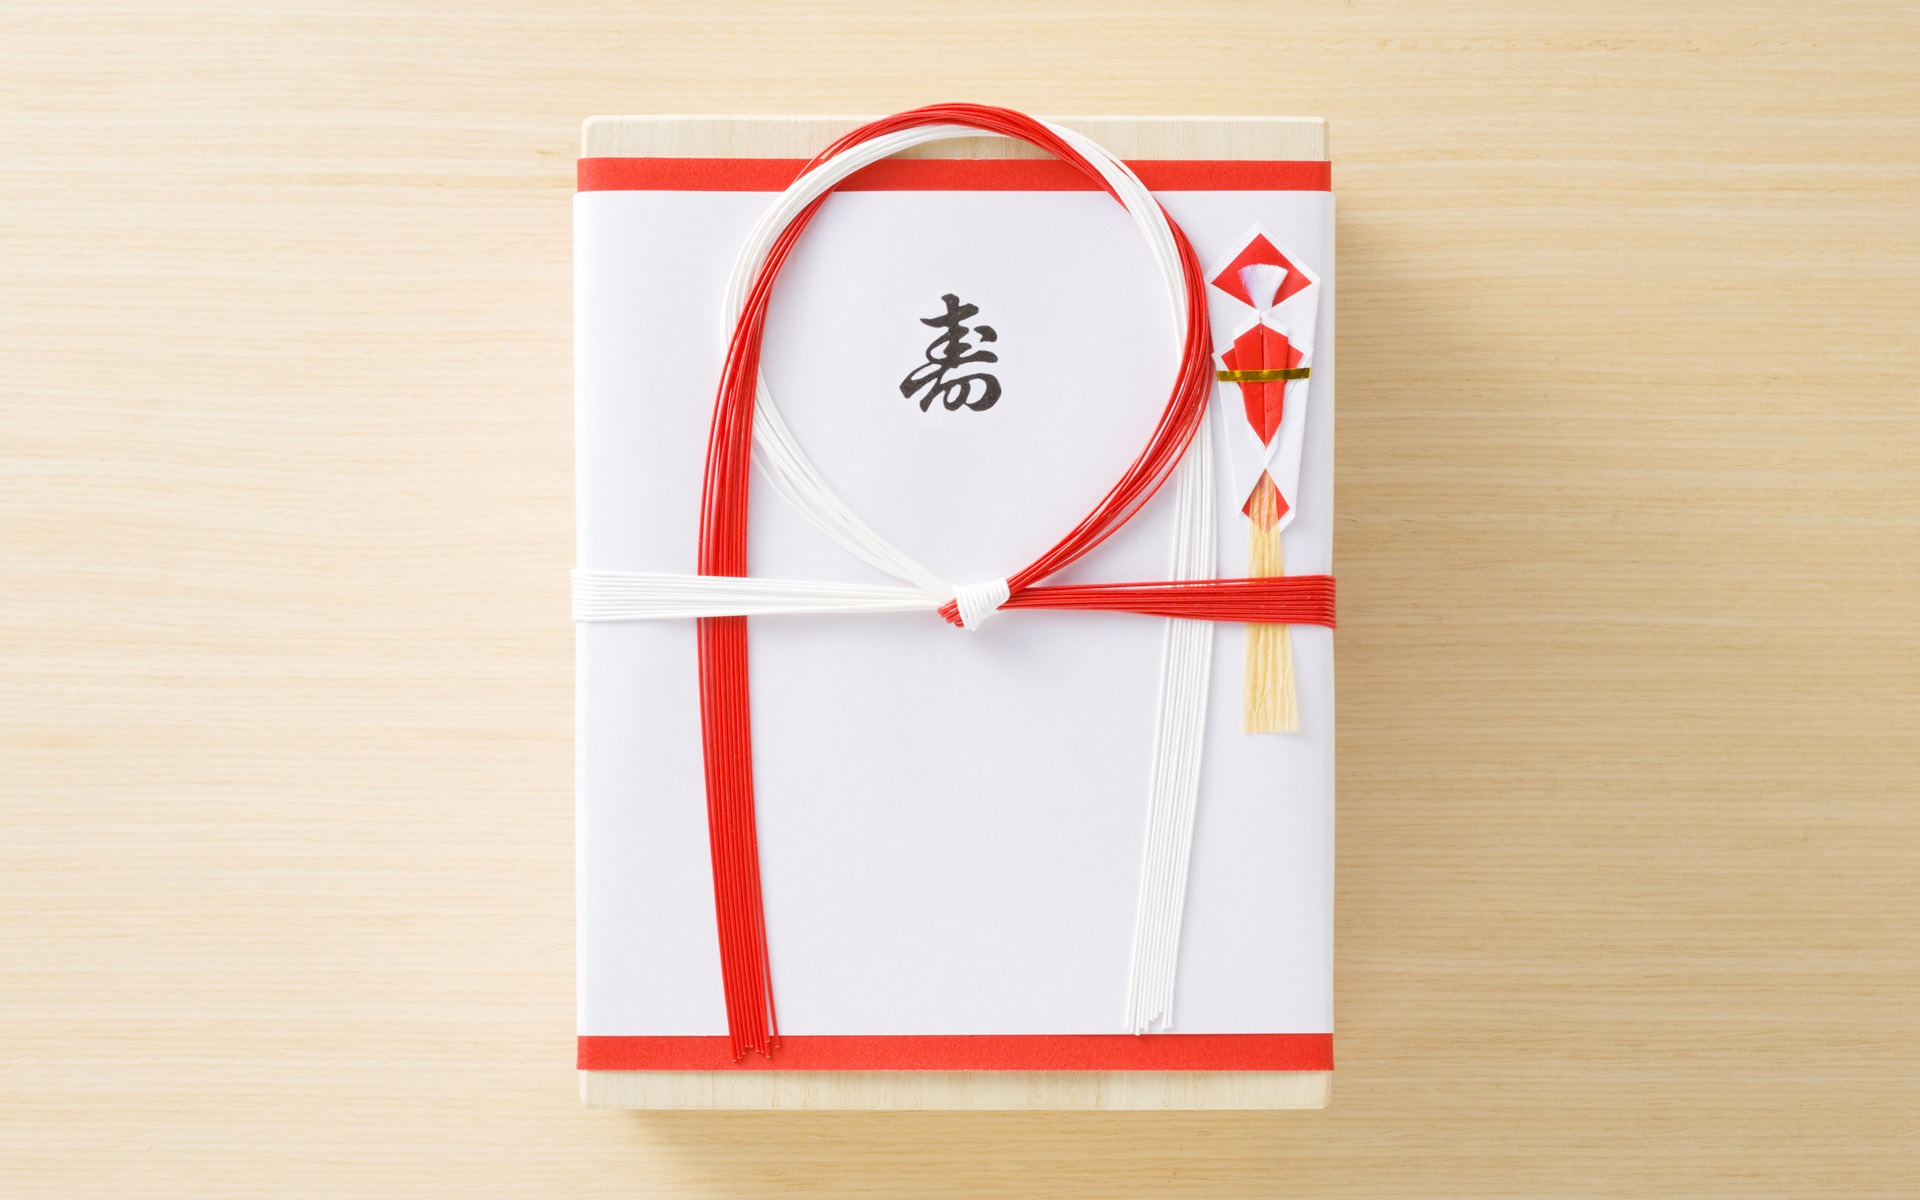 Fondos de año nuevo japonés Cultura (3) #16 - 1920x1200